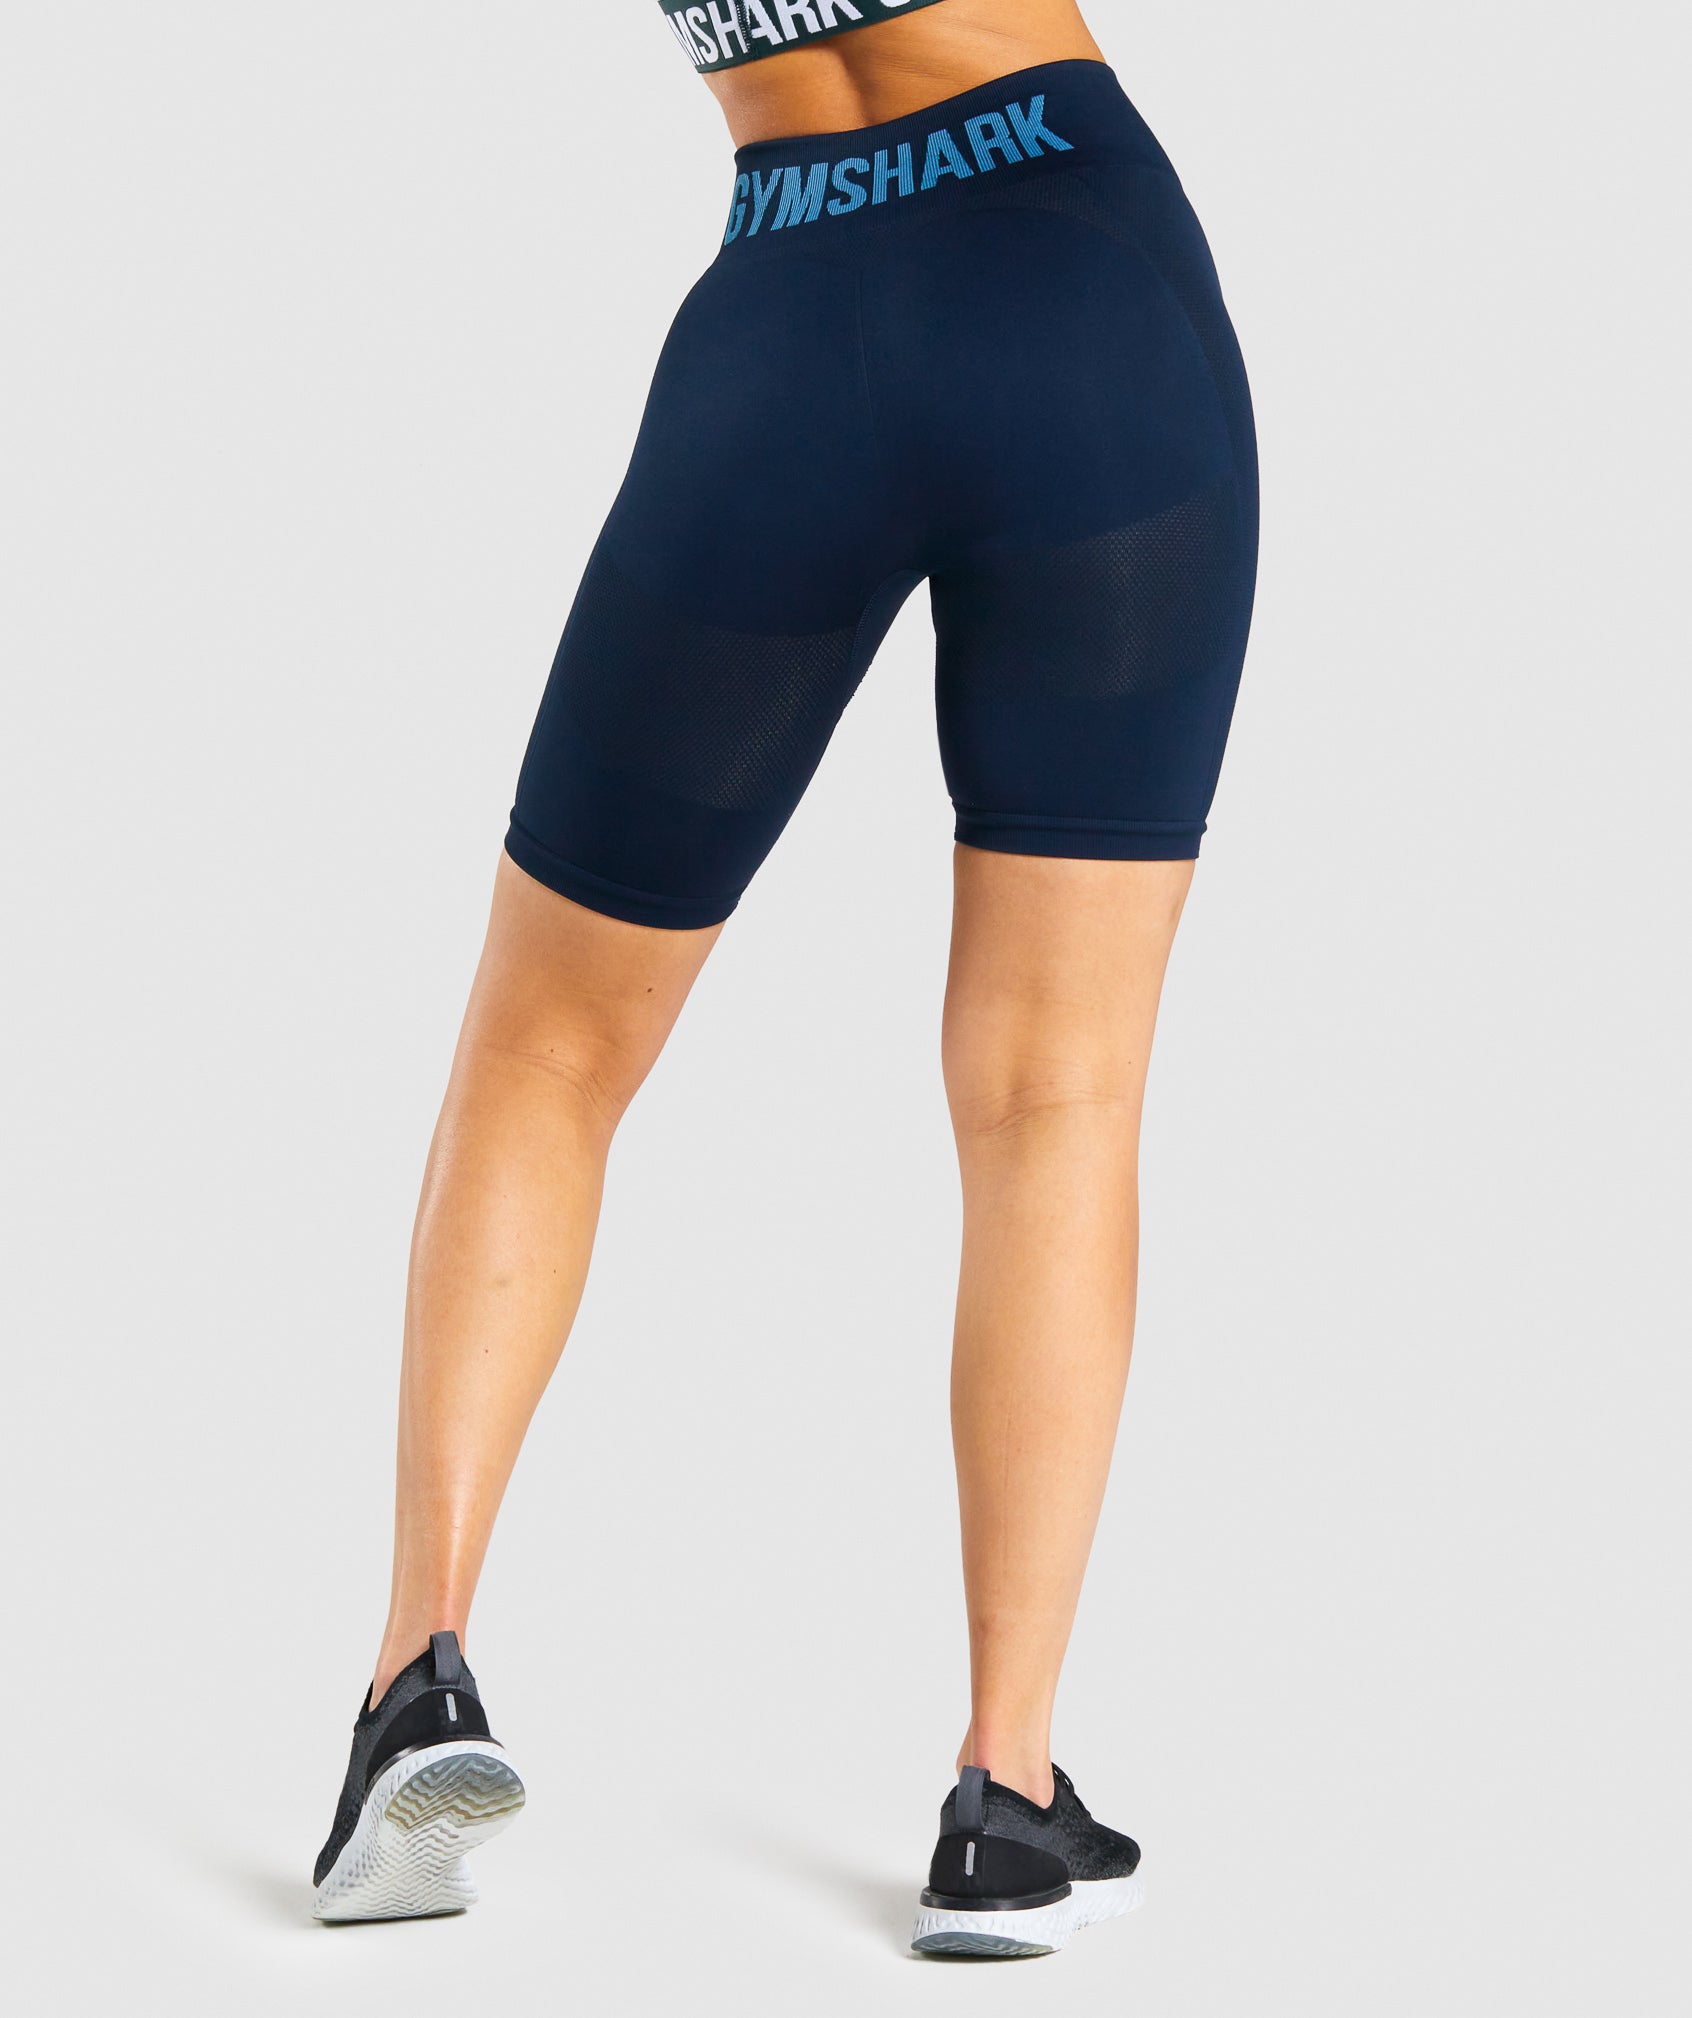 Gymshark Womens Flex High Waisted Cycling Short Size - Depop